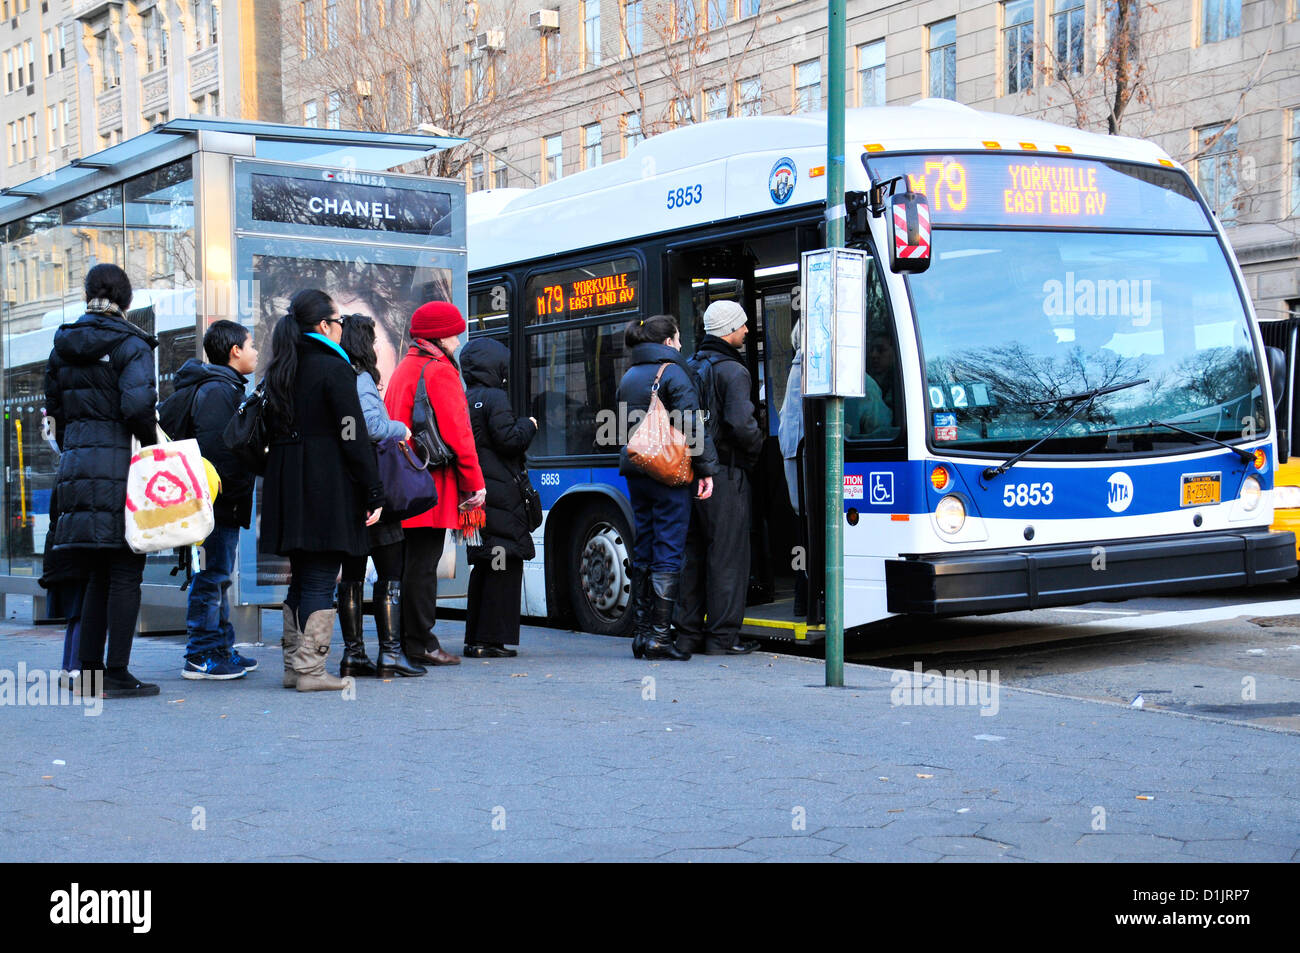 New York City öffentliche Verkehrsmittel M79 Crosstown MTA Bus auf der Upper West Side, Manhattan, New York City, USA Stockfoto